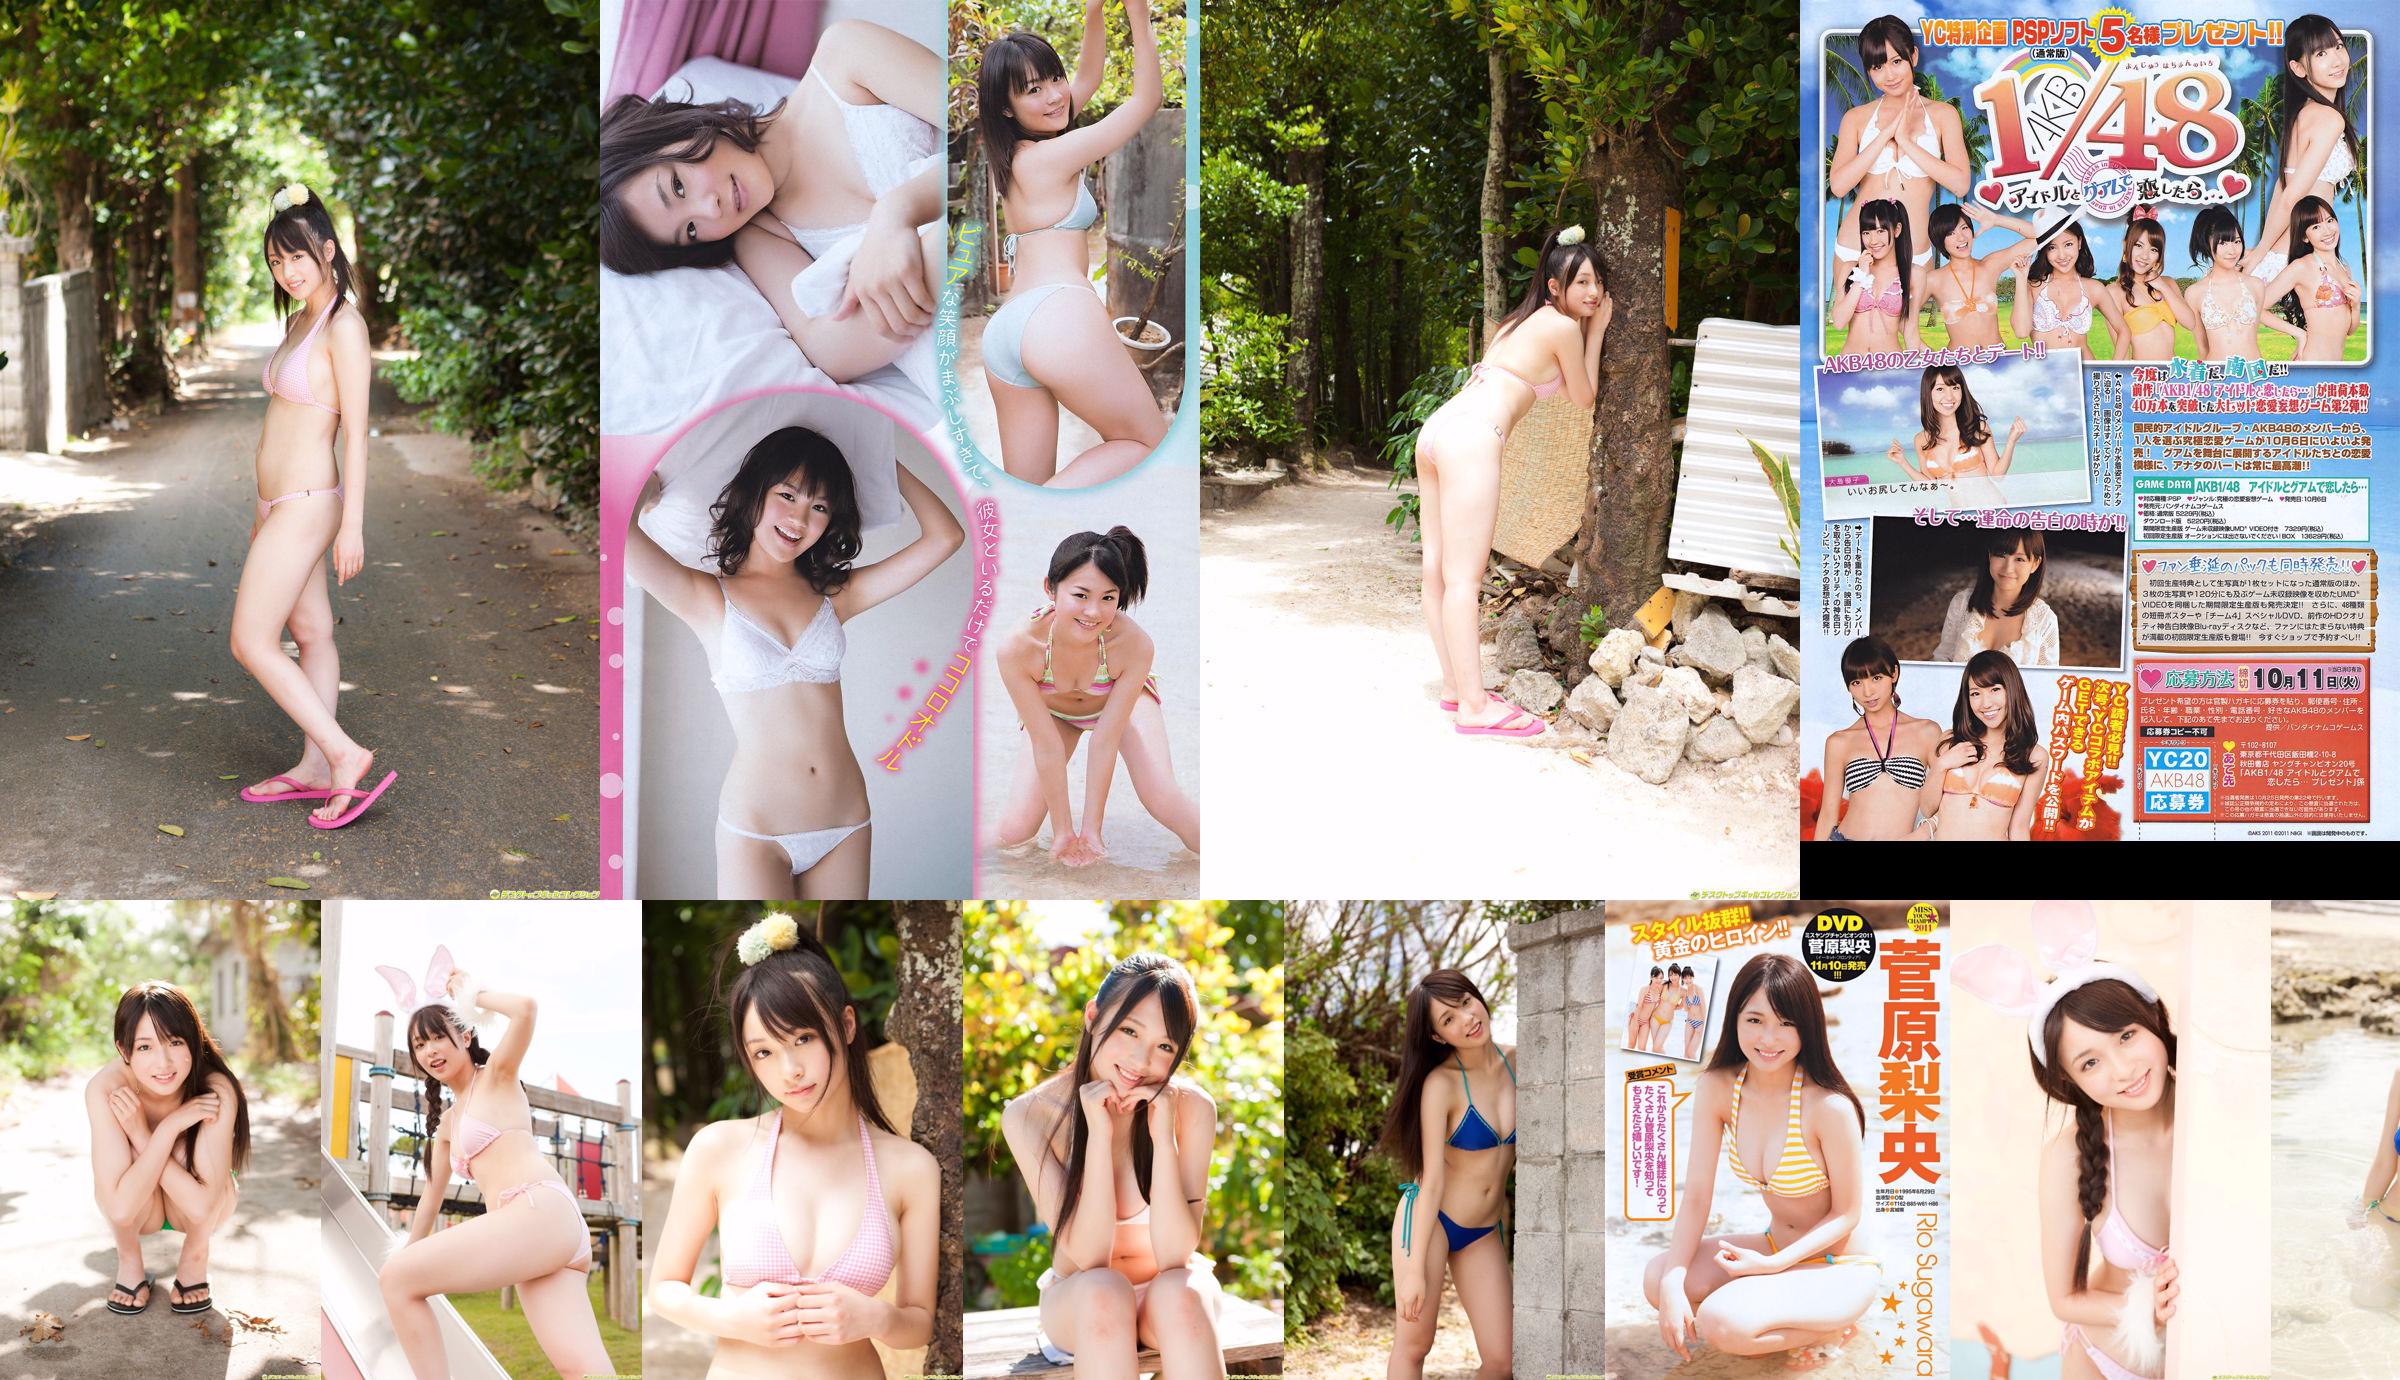 [Jovem campeão] Sugawara Risa, Horikawa Mikako, Matsushima no ou 2011 No. 20 Photo Magazine No.3f3fda Página 2